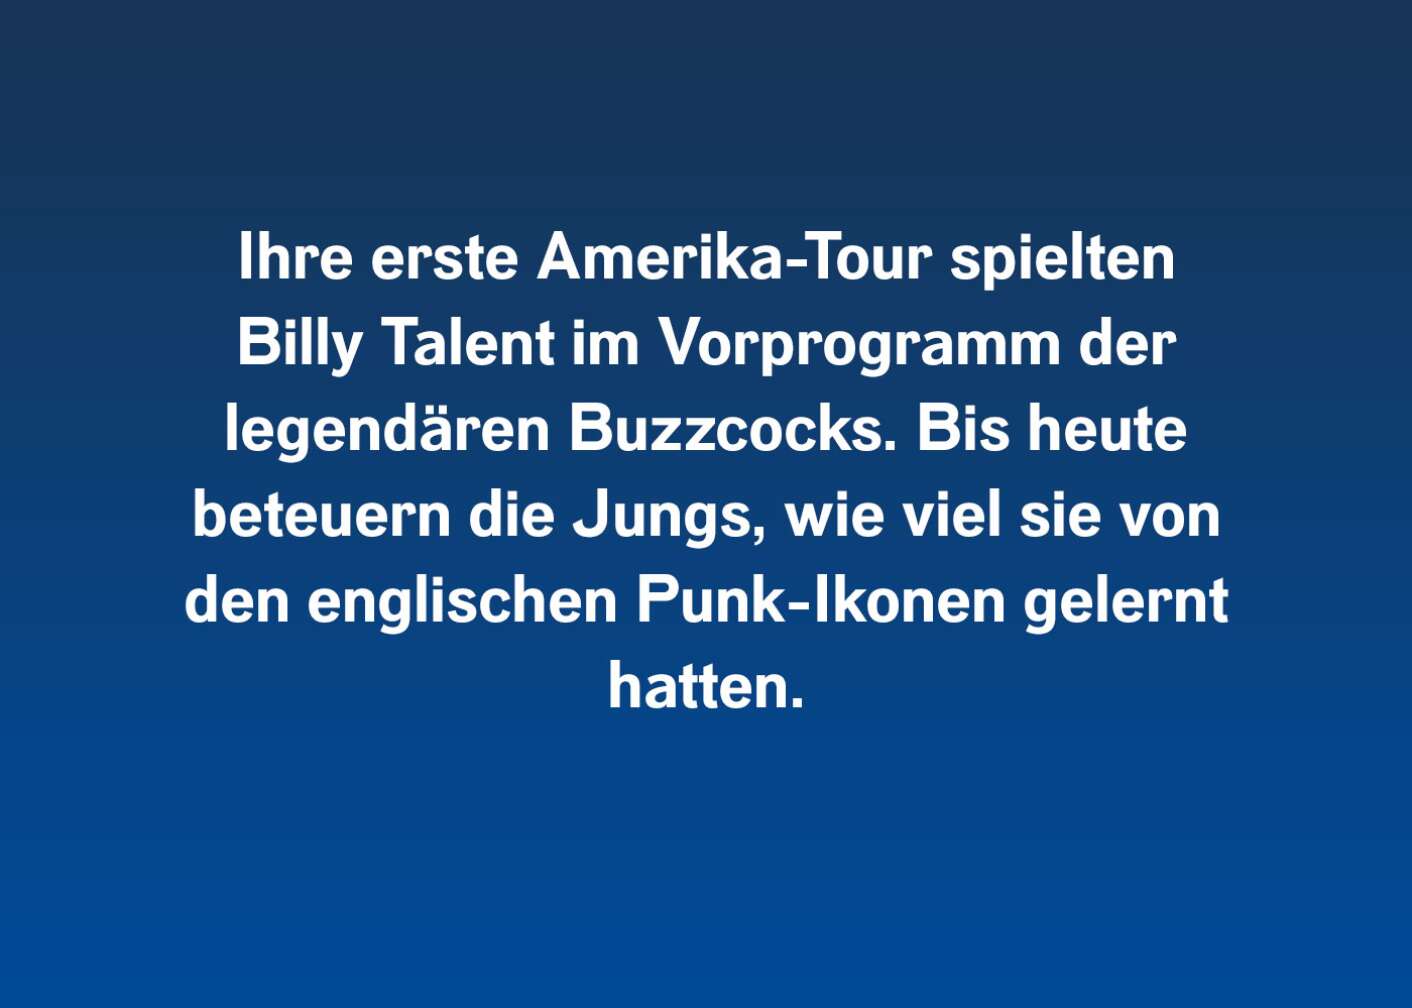 Fakt über Billy Talent als Fließtext